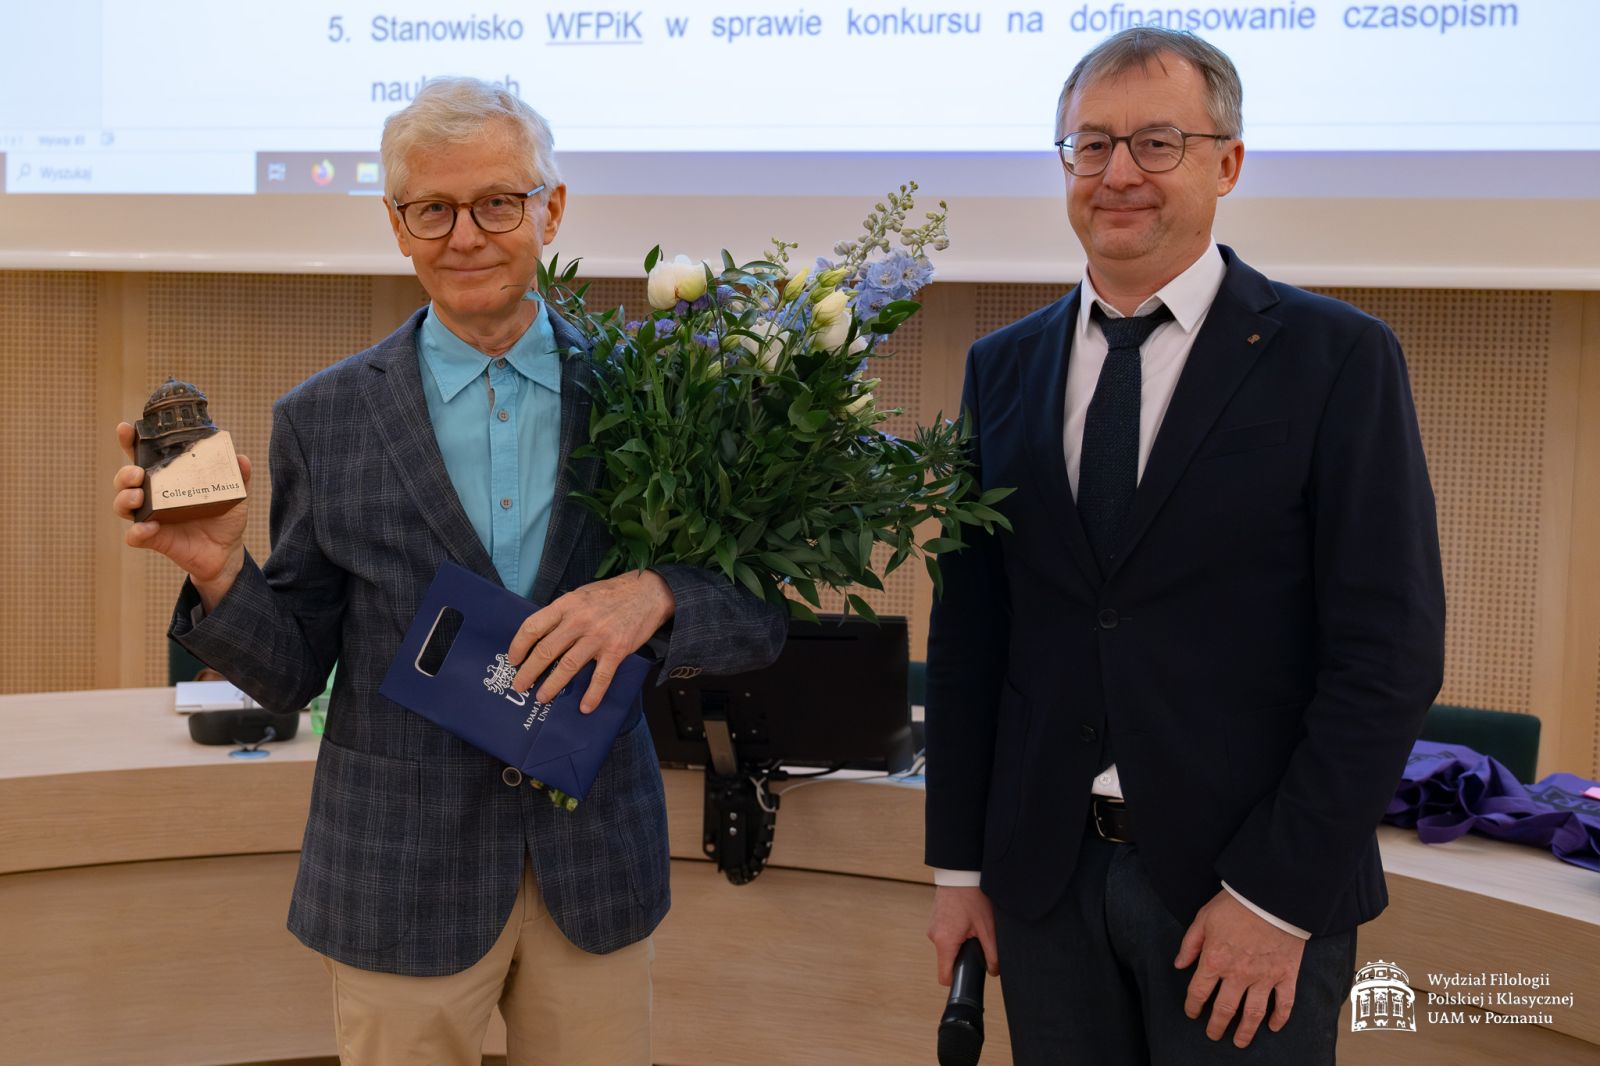 Prof. Przychodniak prezentuje statuetkę Collegium Maius, w drugiej ręce trzyma bukiet kwiatów, obok stoi uśmiechnięty dziekan WFPiK.